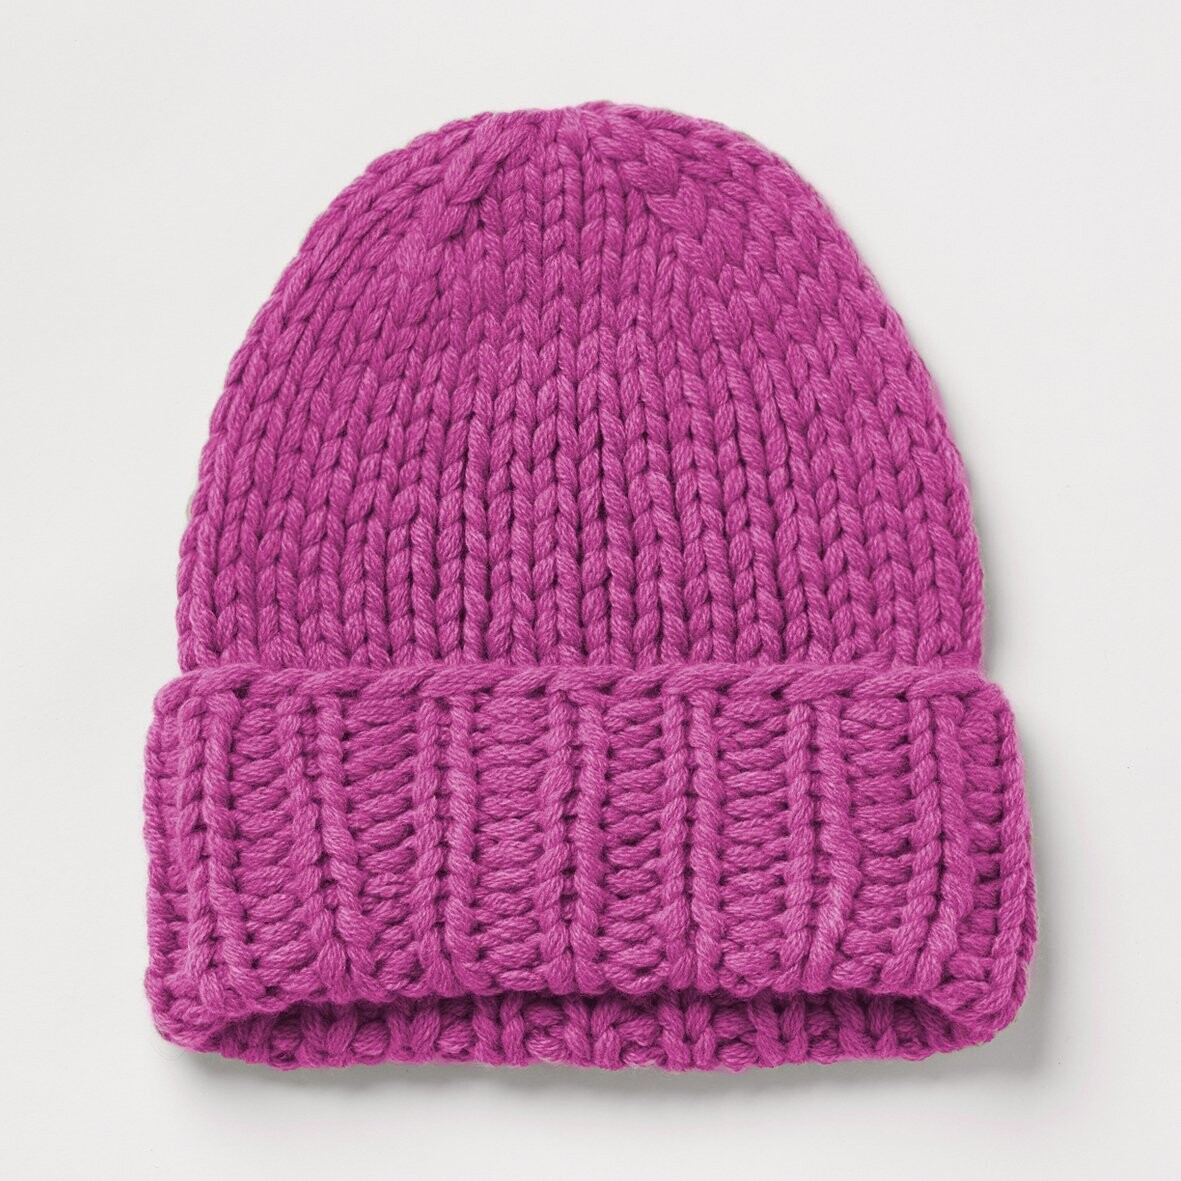 Handstrick-Mütze NORA, Farbe: pink